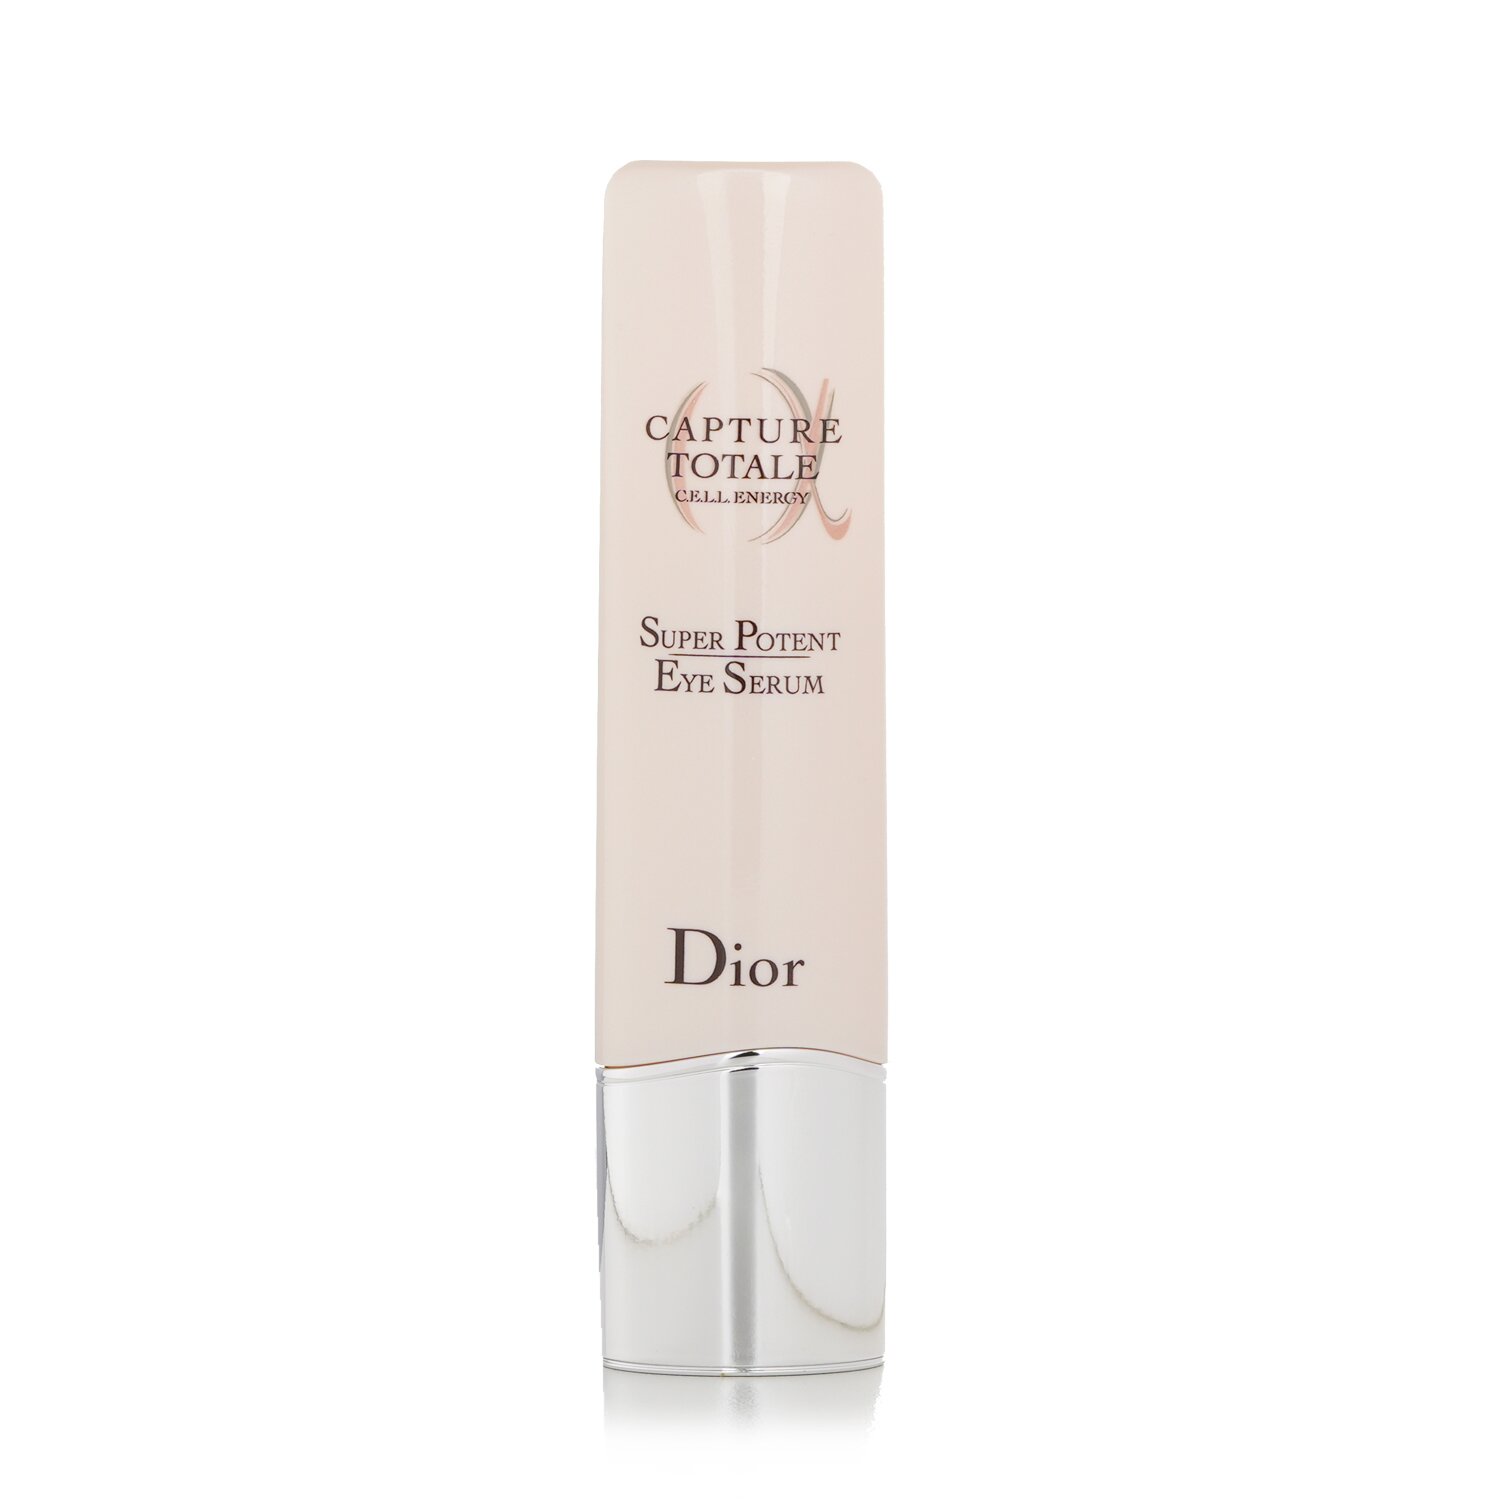 迪奧 Christian Dior - Capture Totale C.E.L.L. 活力強效抗衰老眼部精華